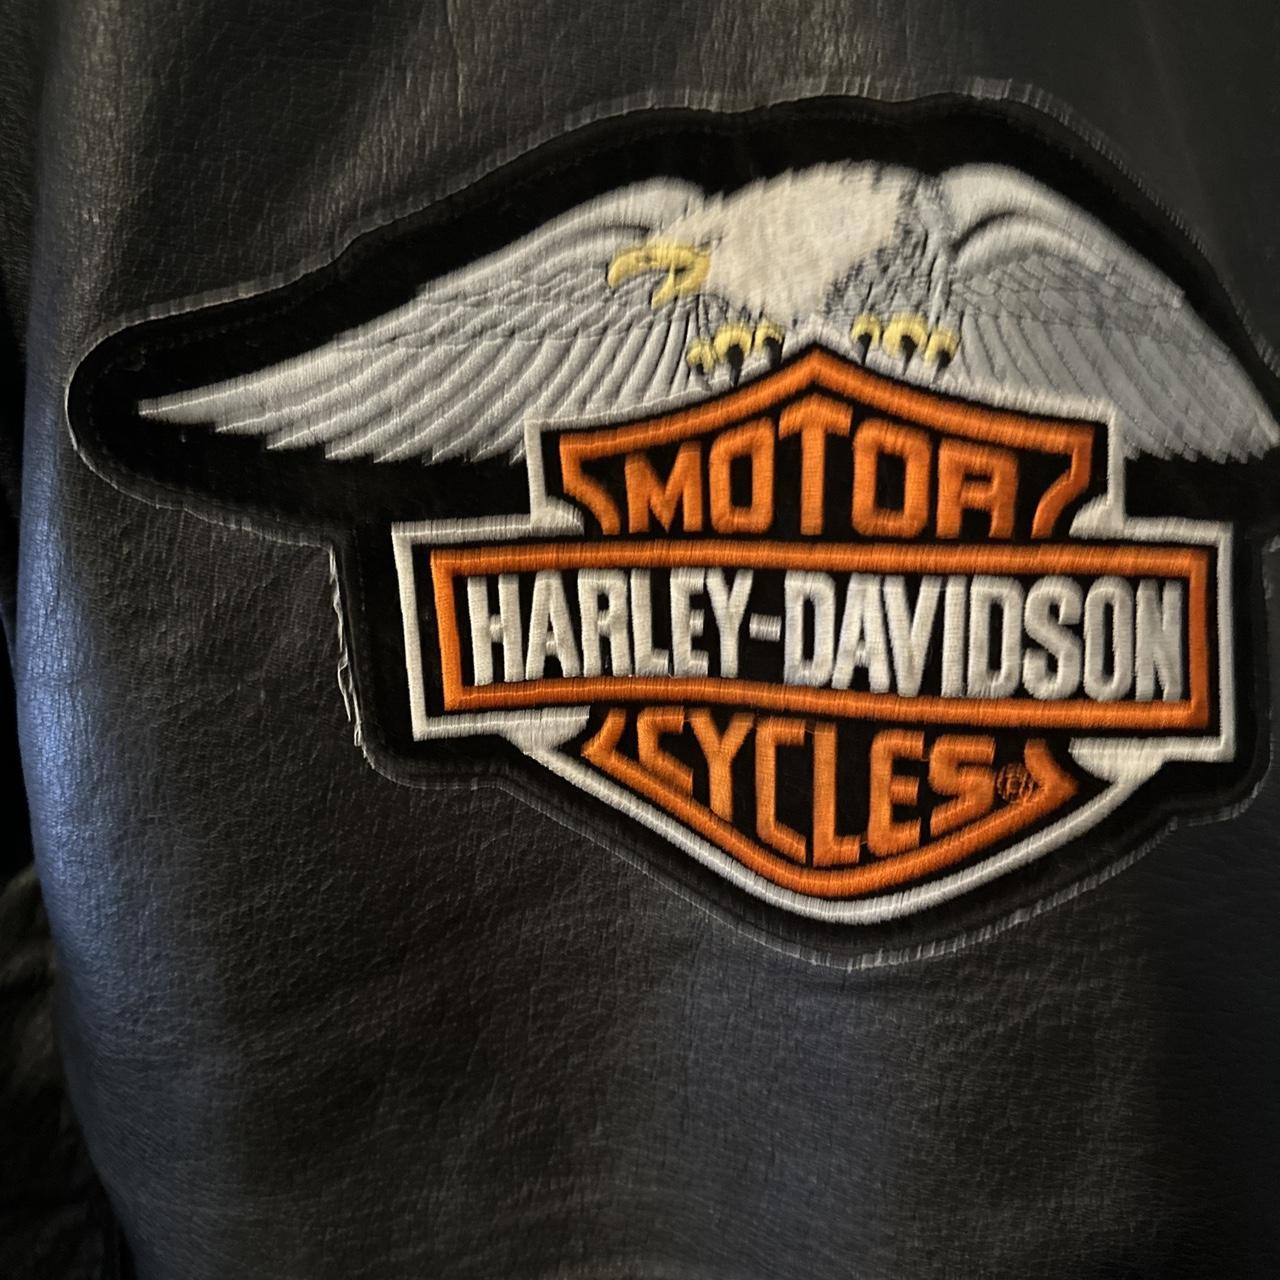 harley davidson jacket wilson leather vintage. Size... - Depop